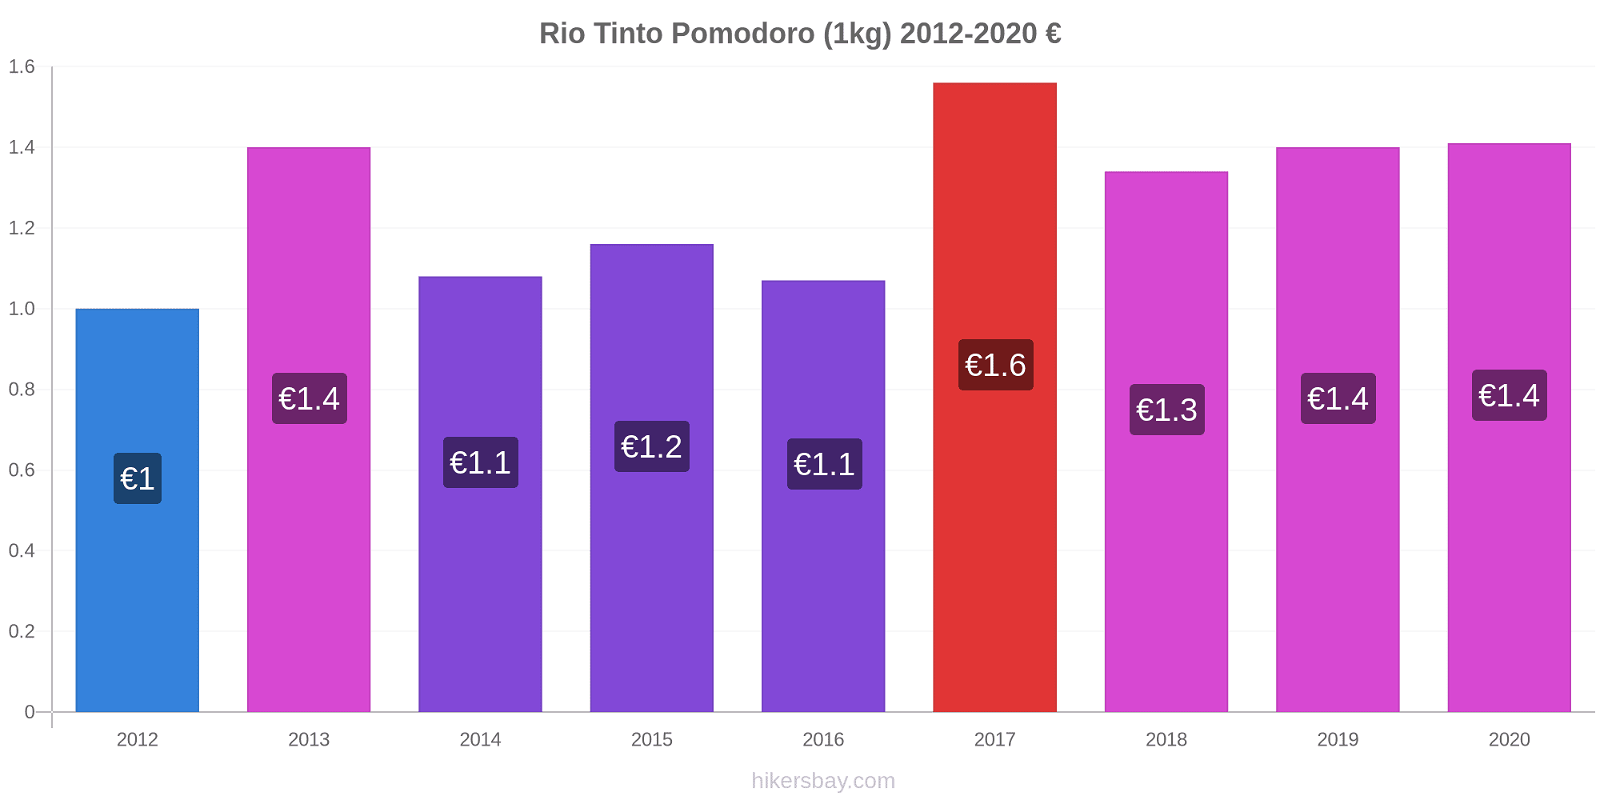 Rio Tinto variazioni di prezzo Pomodoro (1kg) hikersbay.com